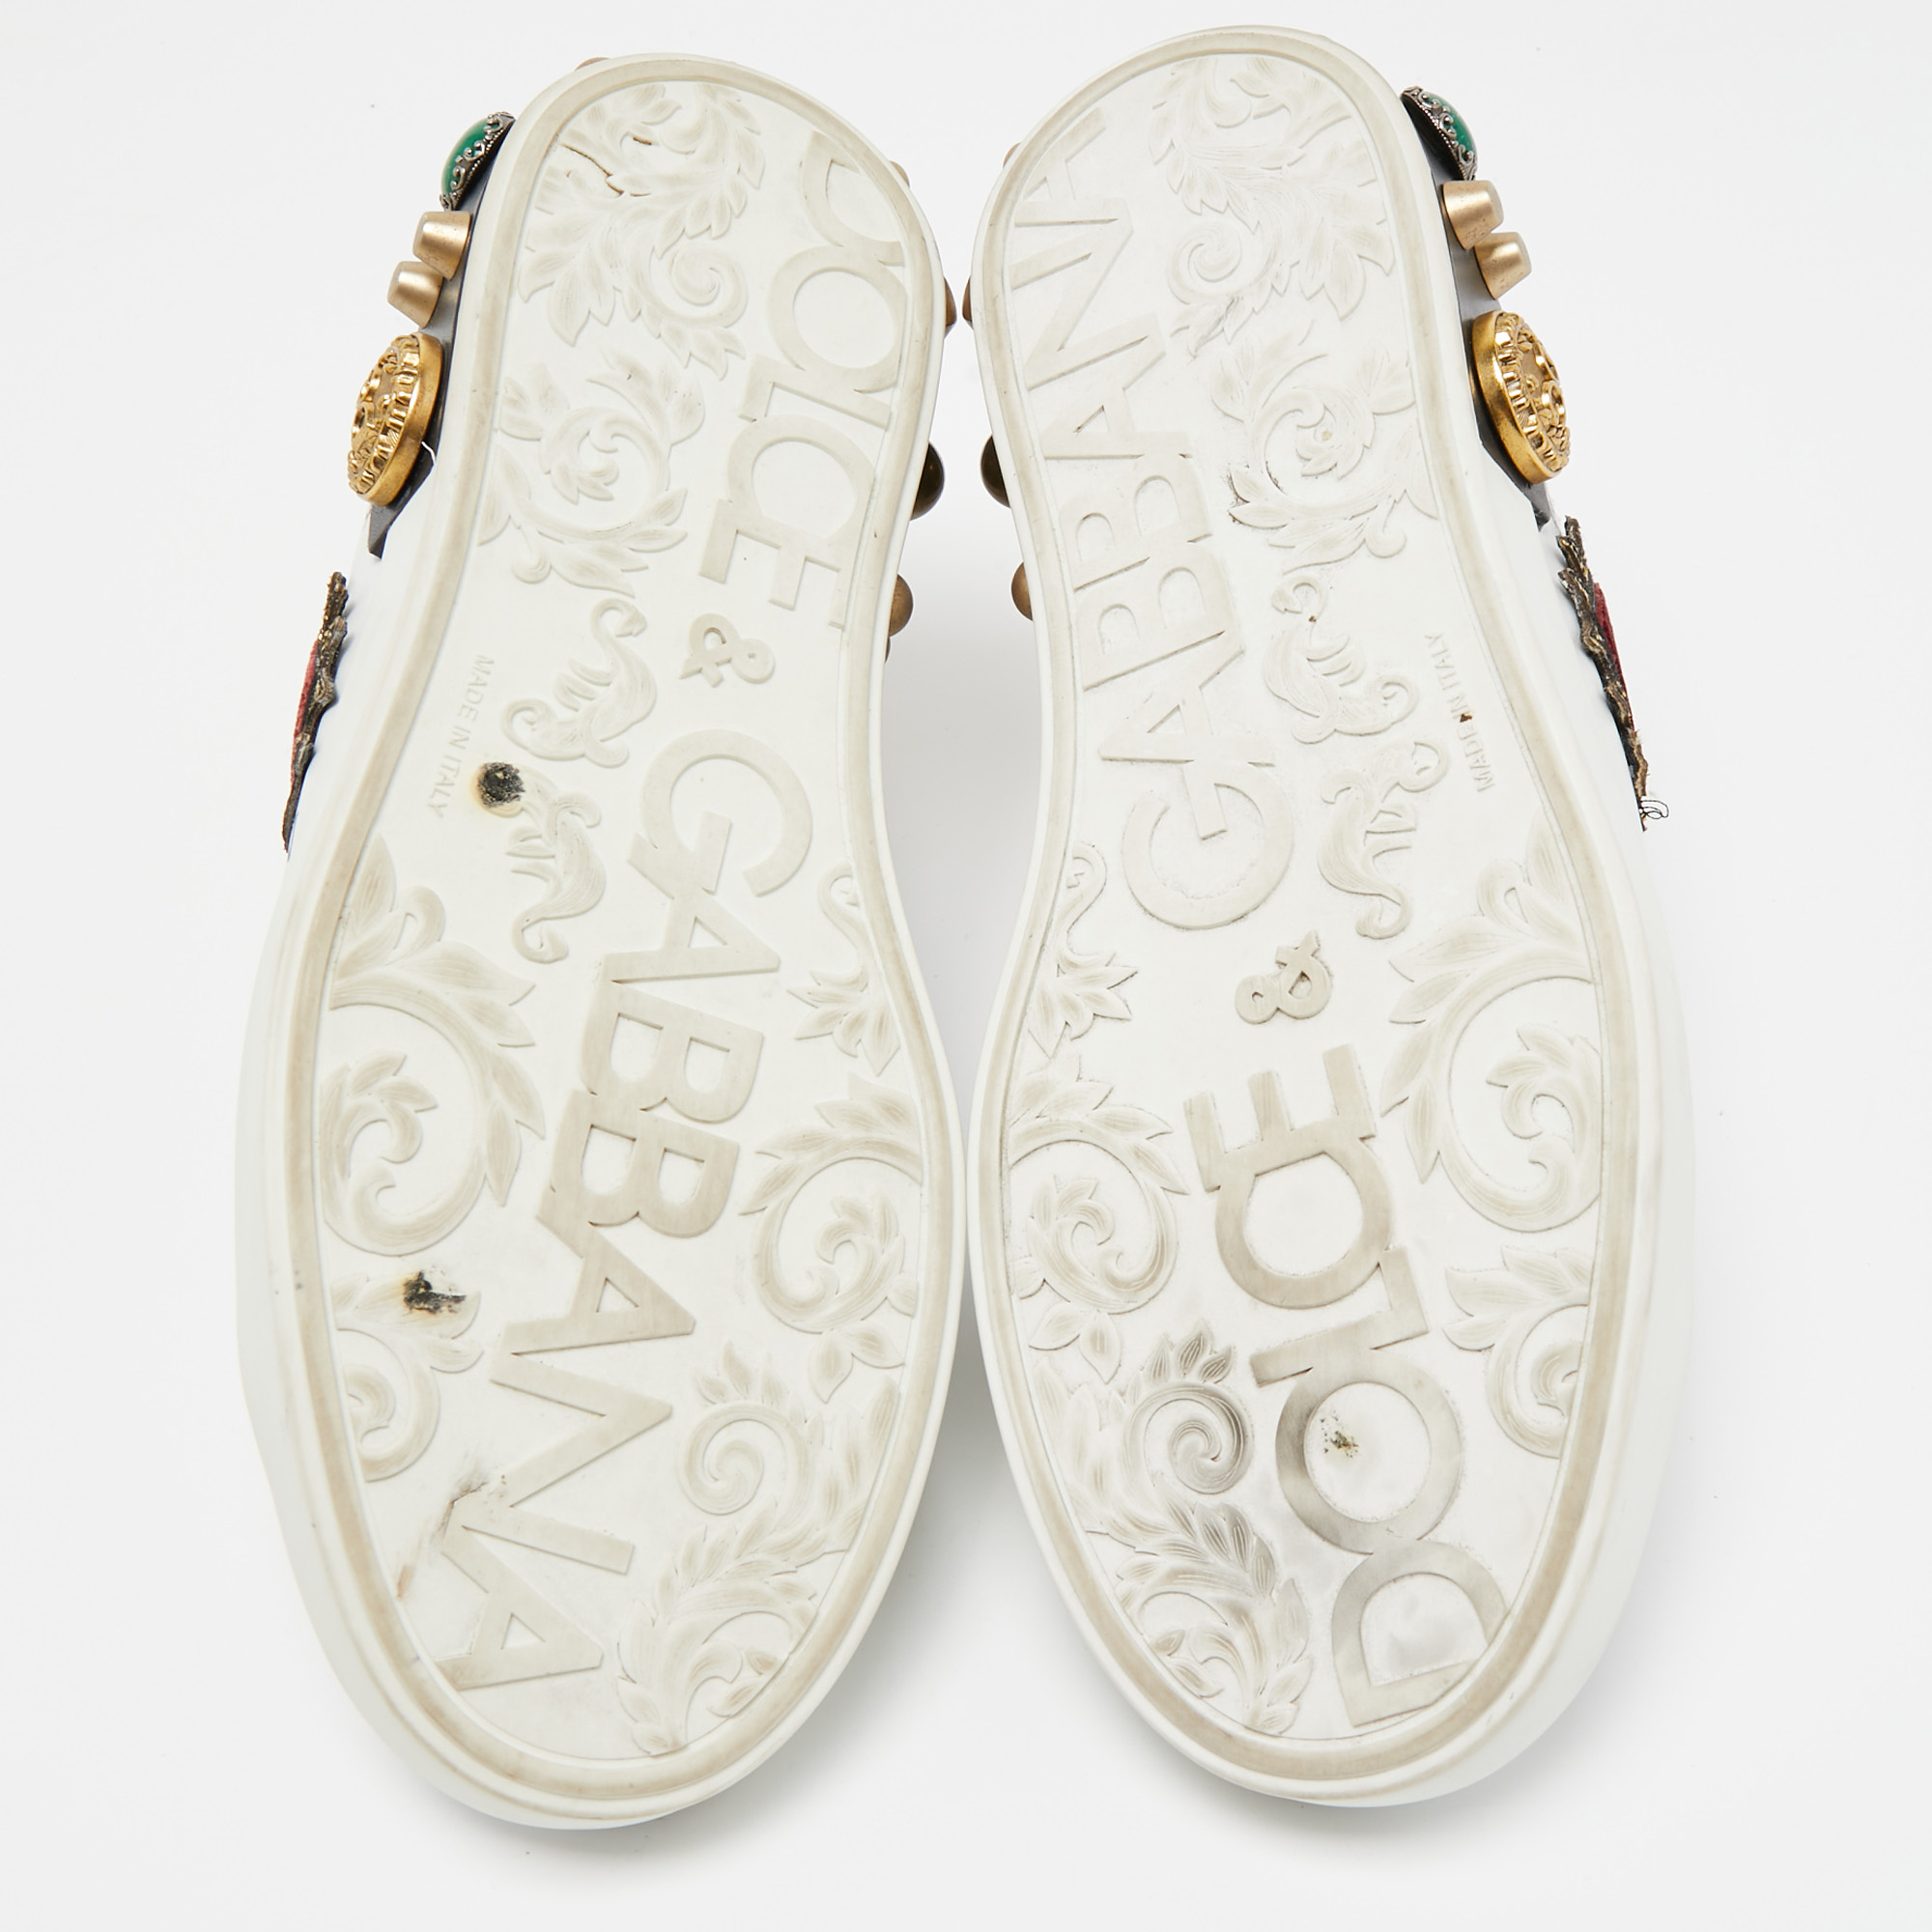 Dolce & Gabbana White Leather Portofino Graffiti Heart Applique Low Top Sneakers Size 41